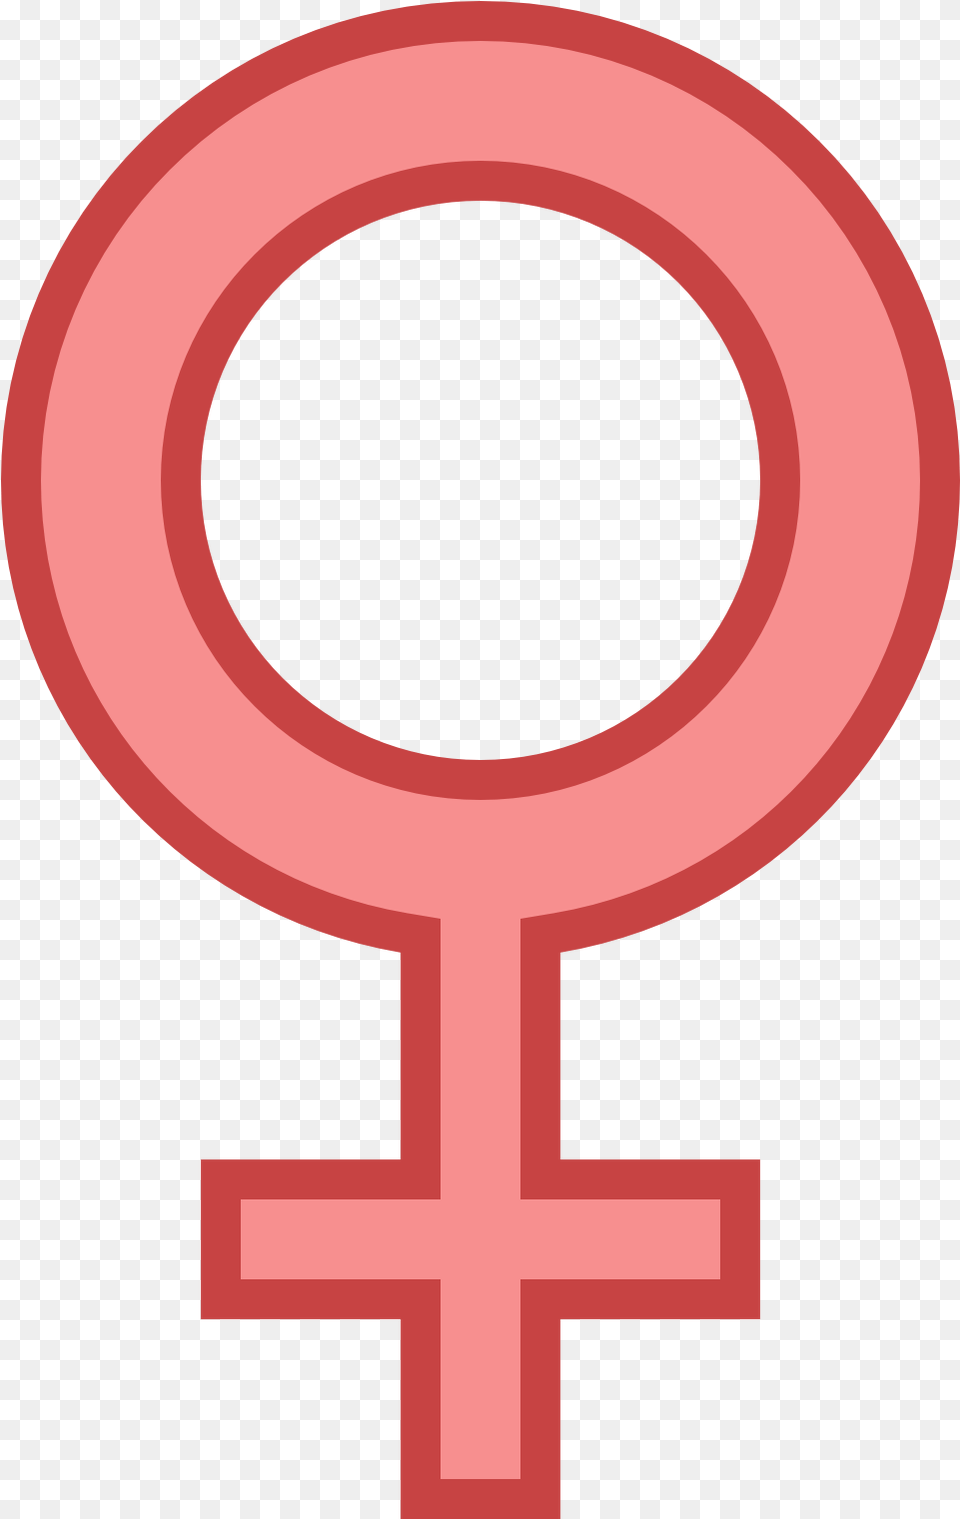 Free Download Female Gender Sign Clipart Gender Female Symbol Transparent Background Png